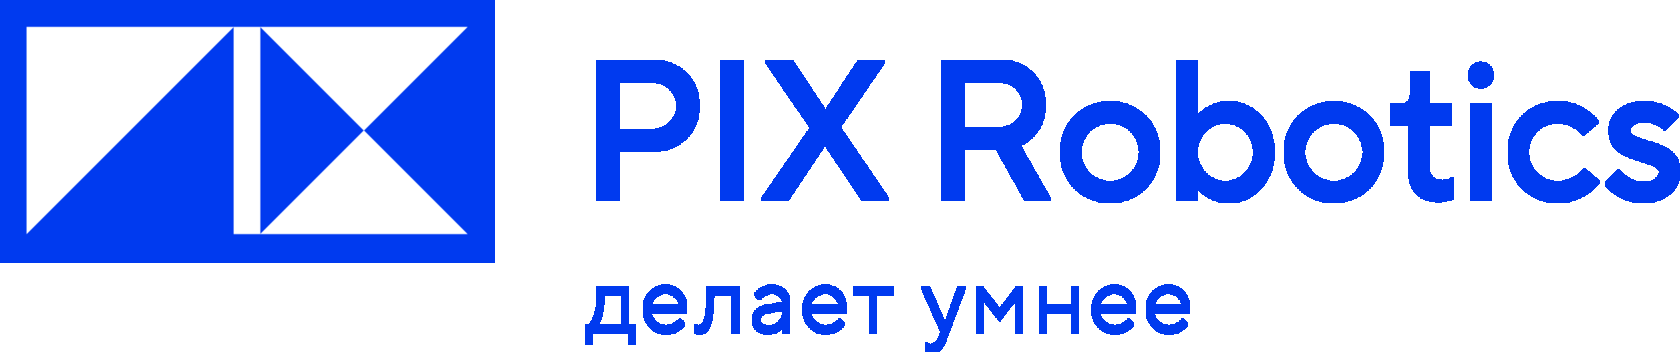 Лауреат премии «Приоритет» PIX Robotics вступила в Ассоциацию разработчиков программных продуктов «Отечественный софт»